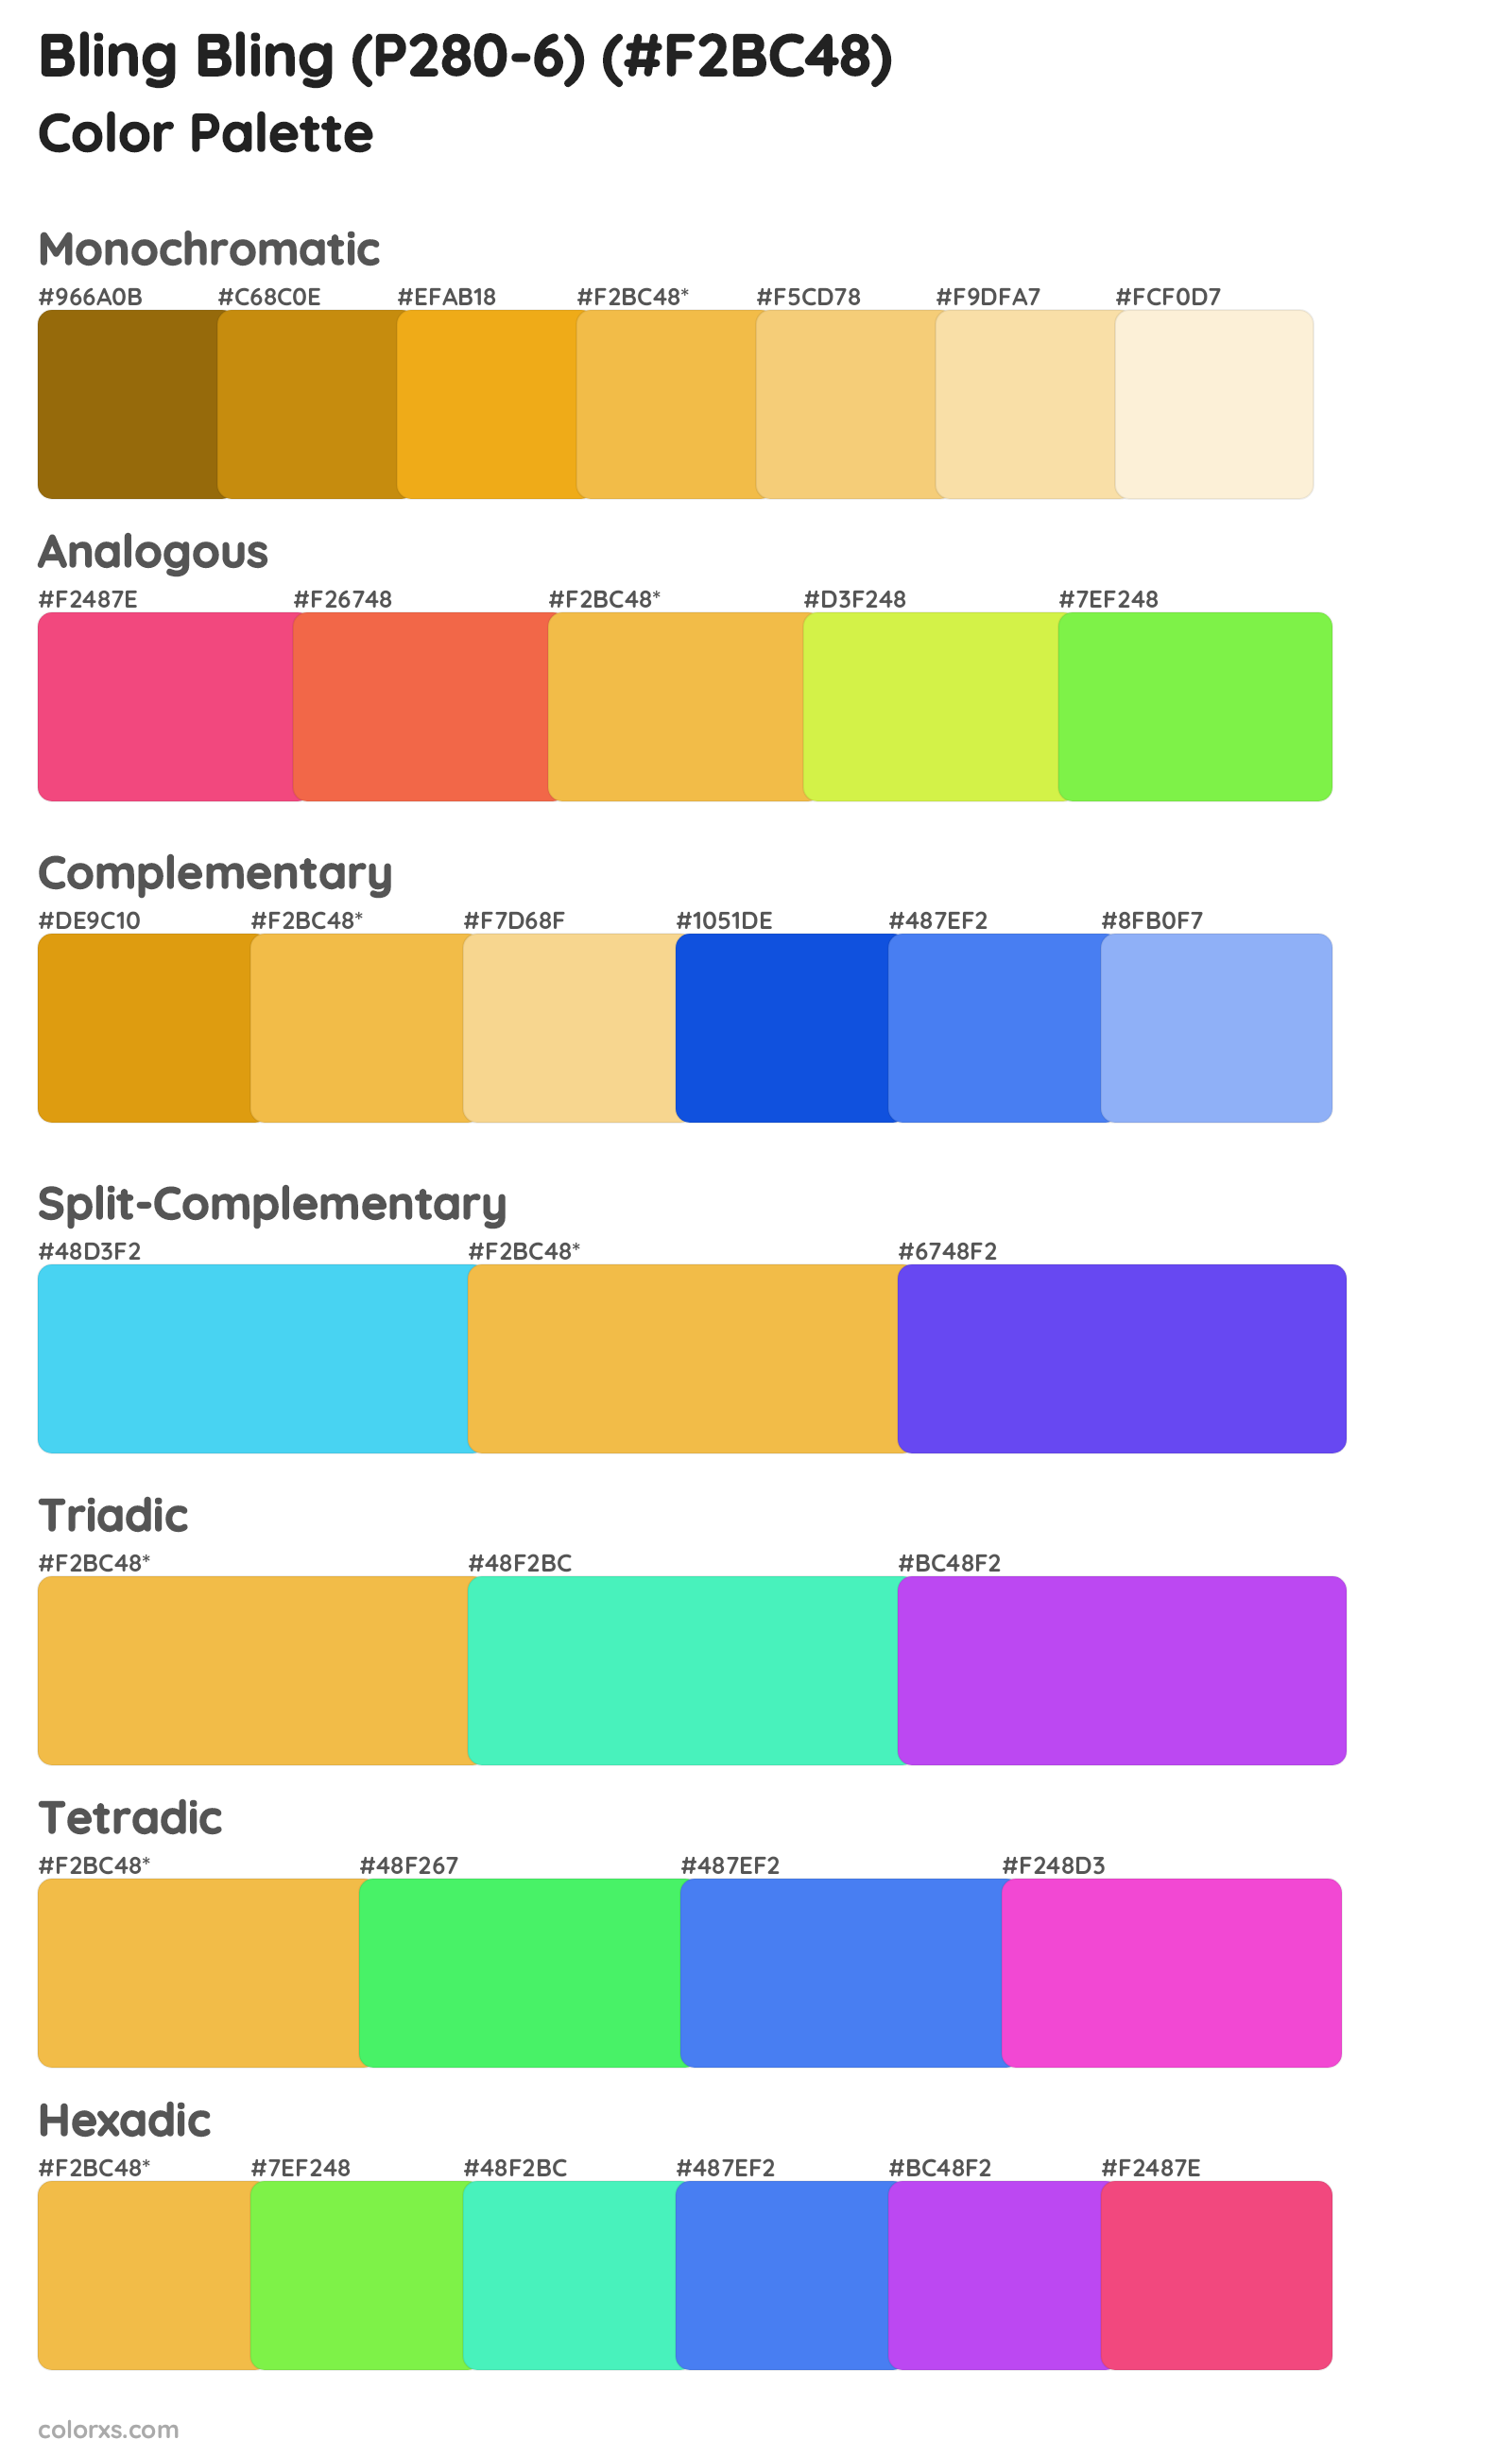 Bling Bling (P280-6) Color Scheme Palettes